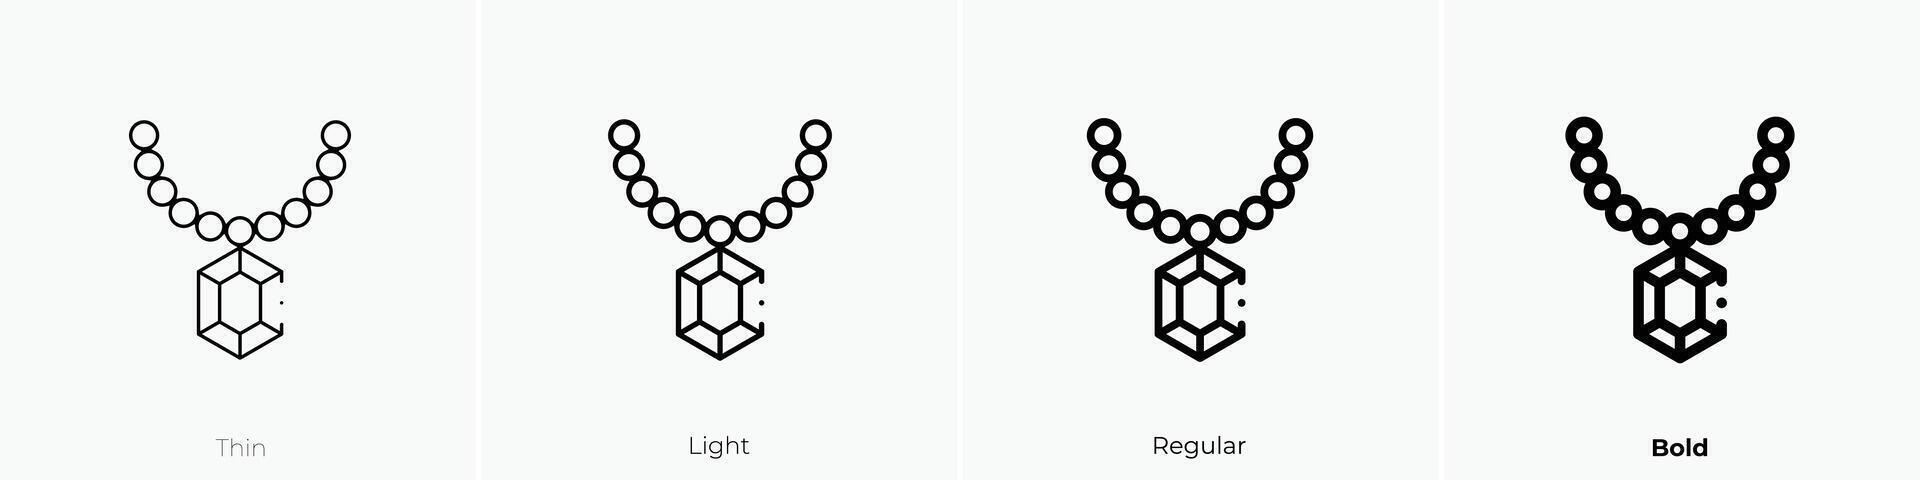 Halskette Symbol. dünn, Licht, regulär und Fett gedruckt Stil Design isoliert auf Weiß Hintergrund vektor